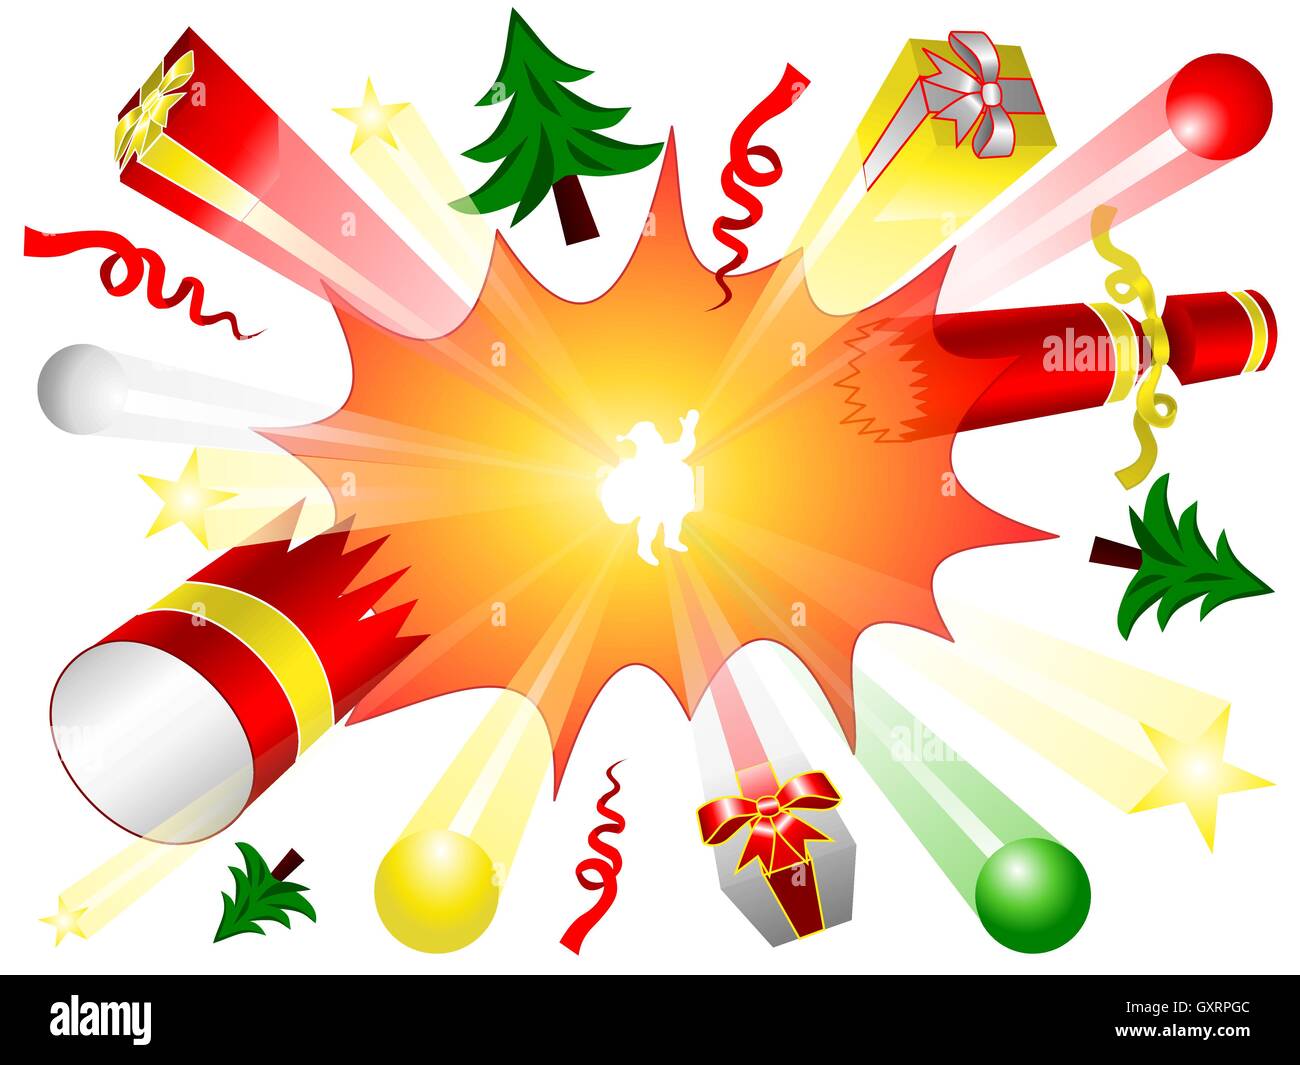 Platzen Sie, Cracker, Bonbon, Geschenkboxen, Kugeln, Sterne, Weihnachtsbäume und Band fliegen mit Text Frohe Weihnachten und der Weihnachtsmann Stock Vektor